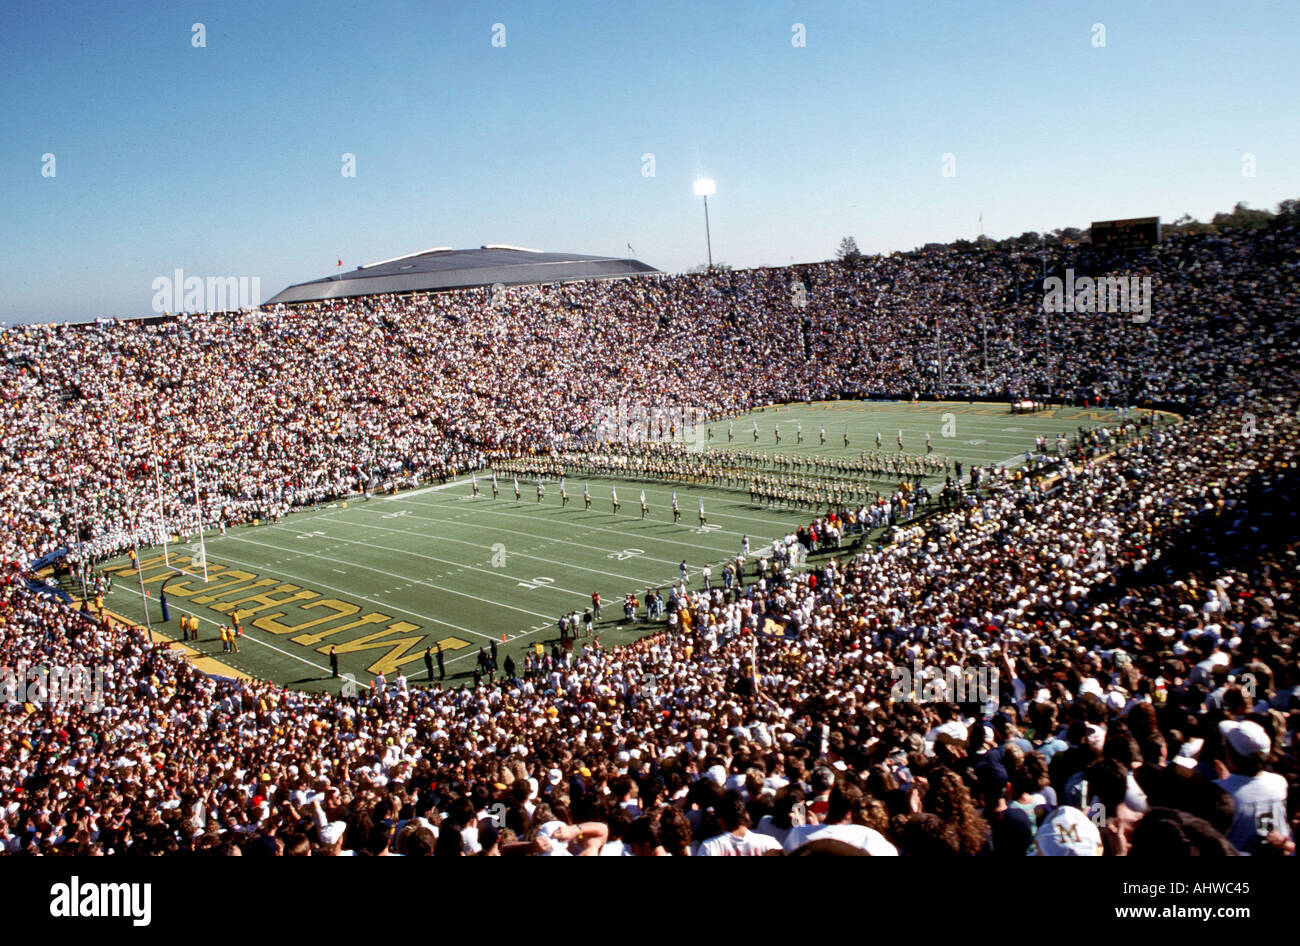 Juego de fútbol americano universitario con un gran llenan de 100 000 fans vs Mich Estado de Michigan Foto de stock